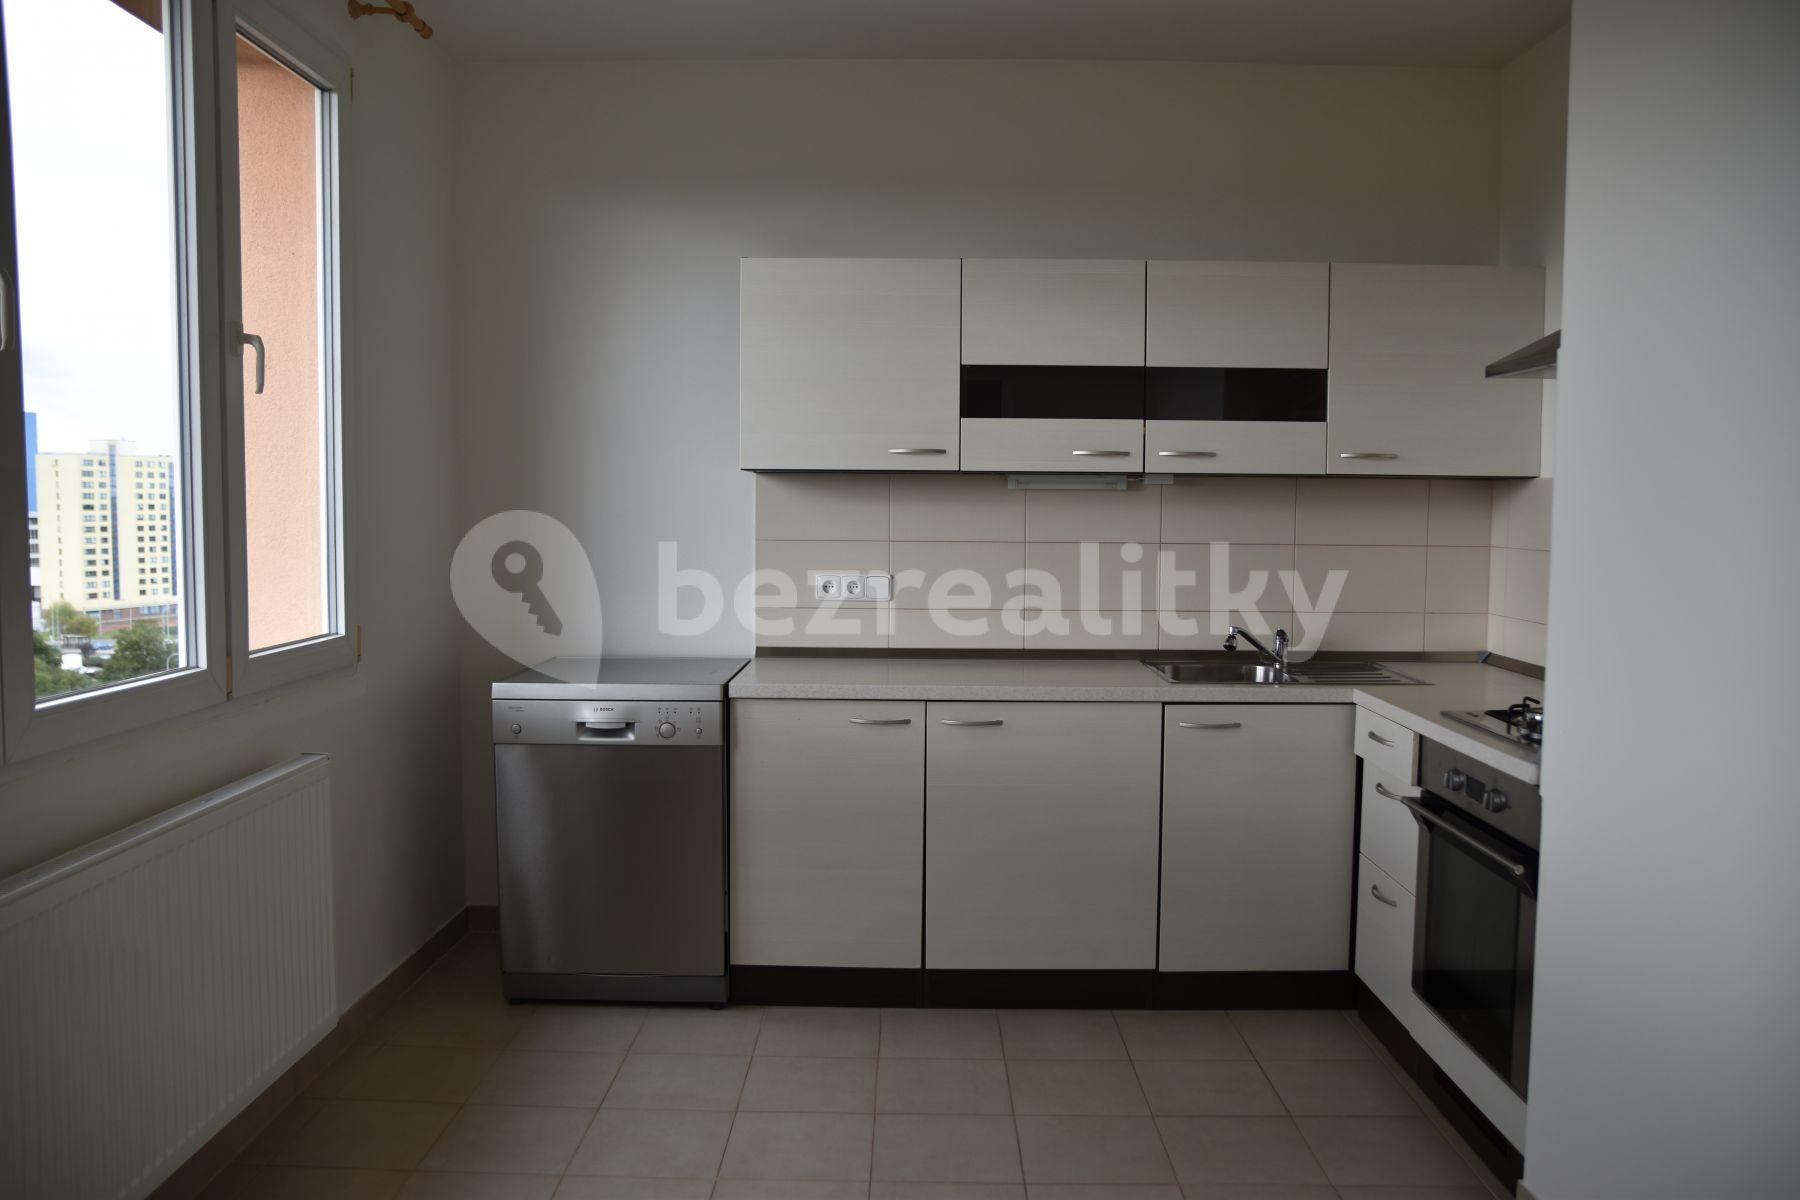 2 bedroom flat to rent, 63 m², Olbramovická, Prague, Prague